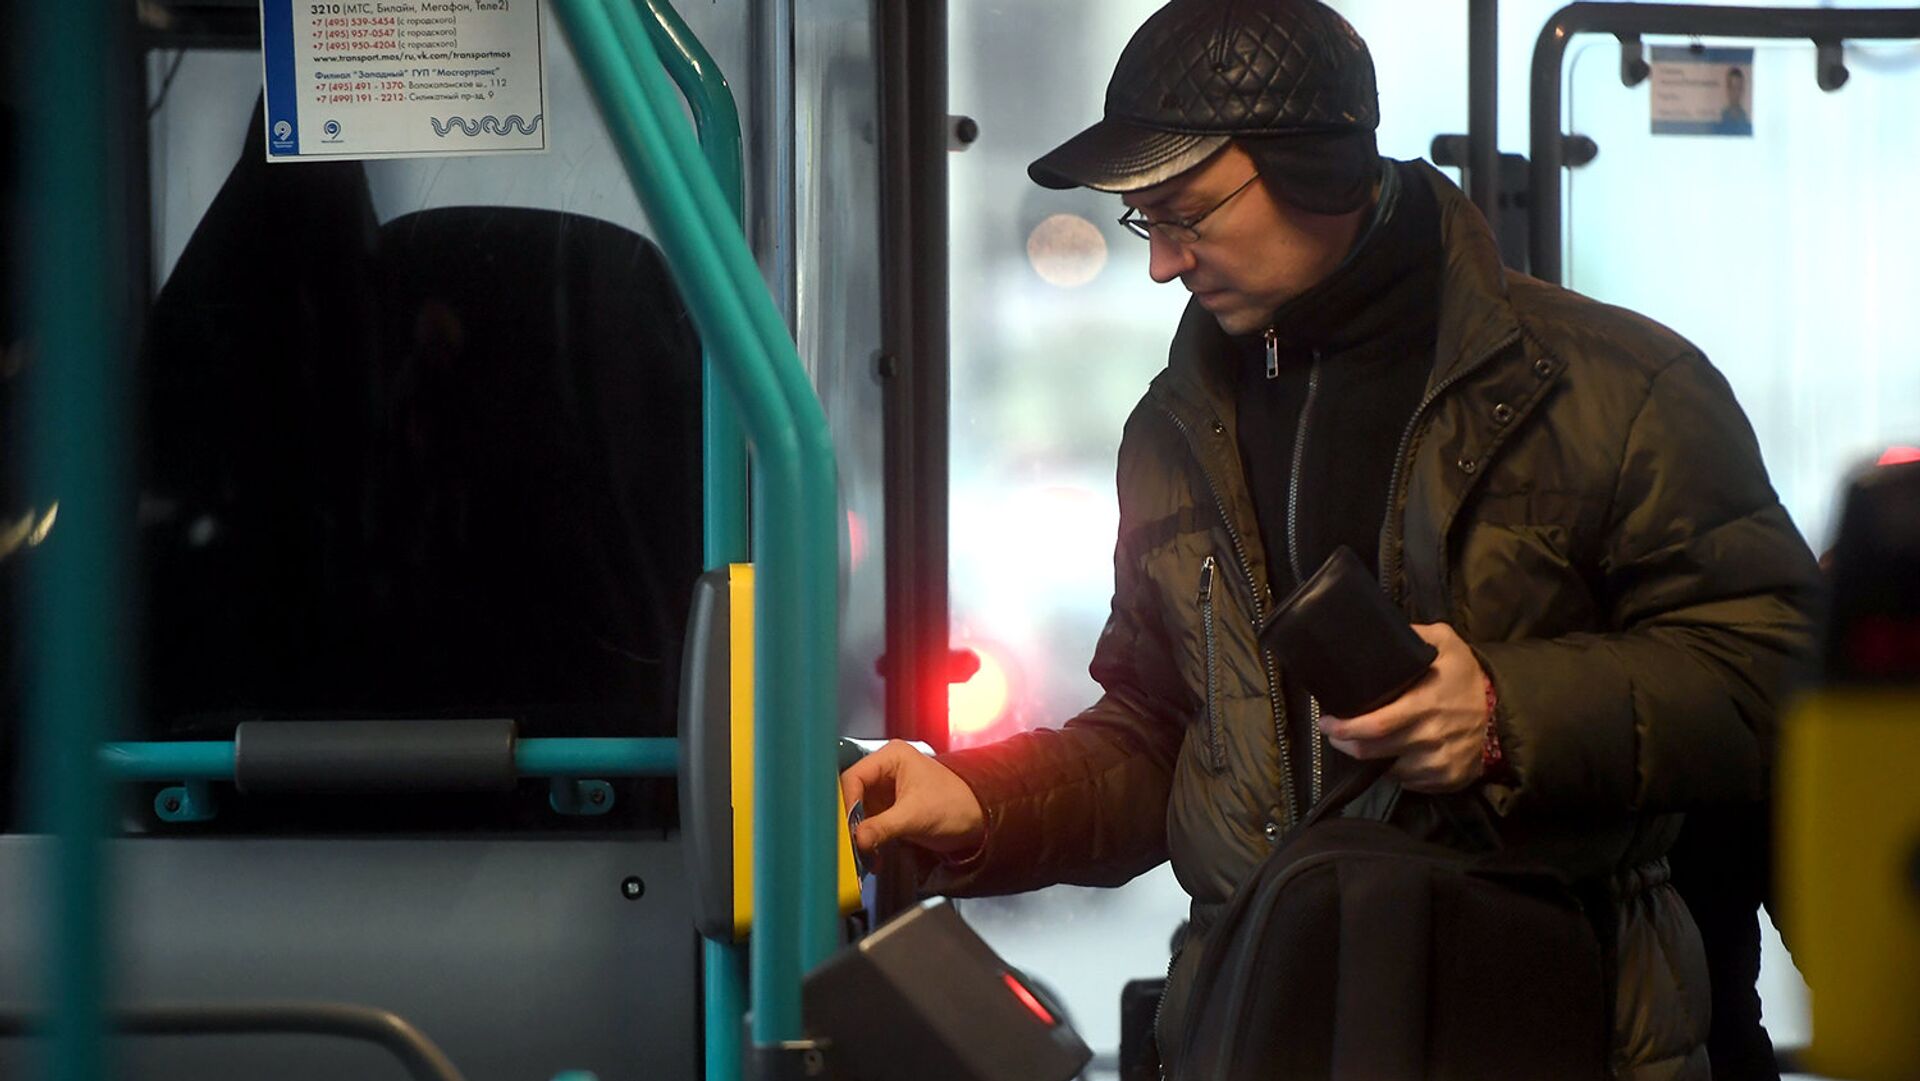 Пассажир оплачивает проезд в автобусе - РИА Новости, 1920, 11.01.2021